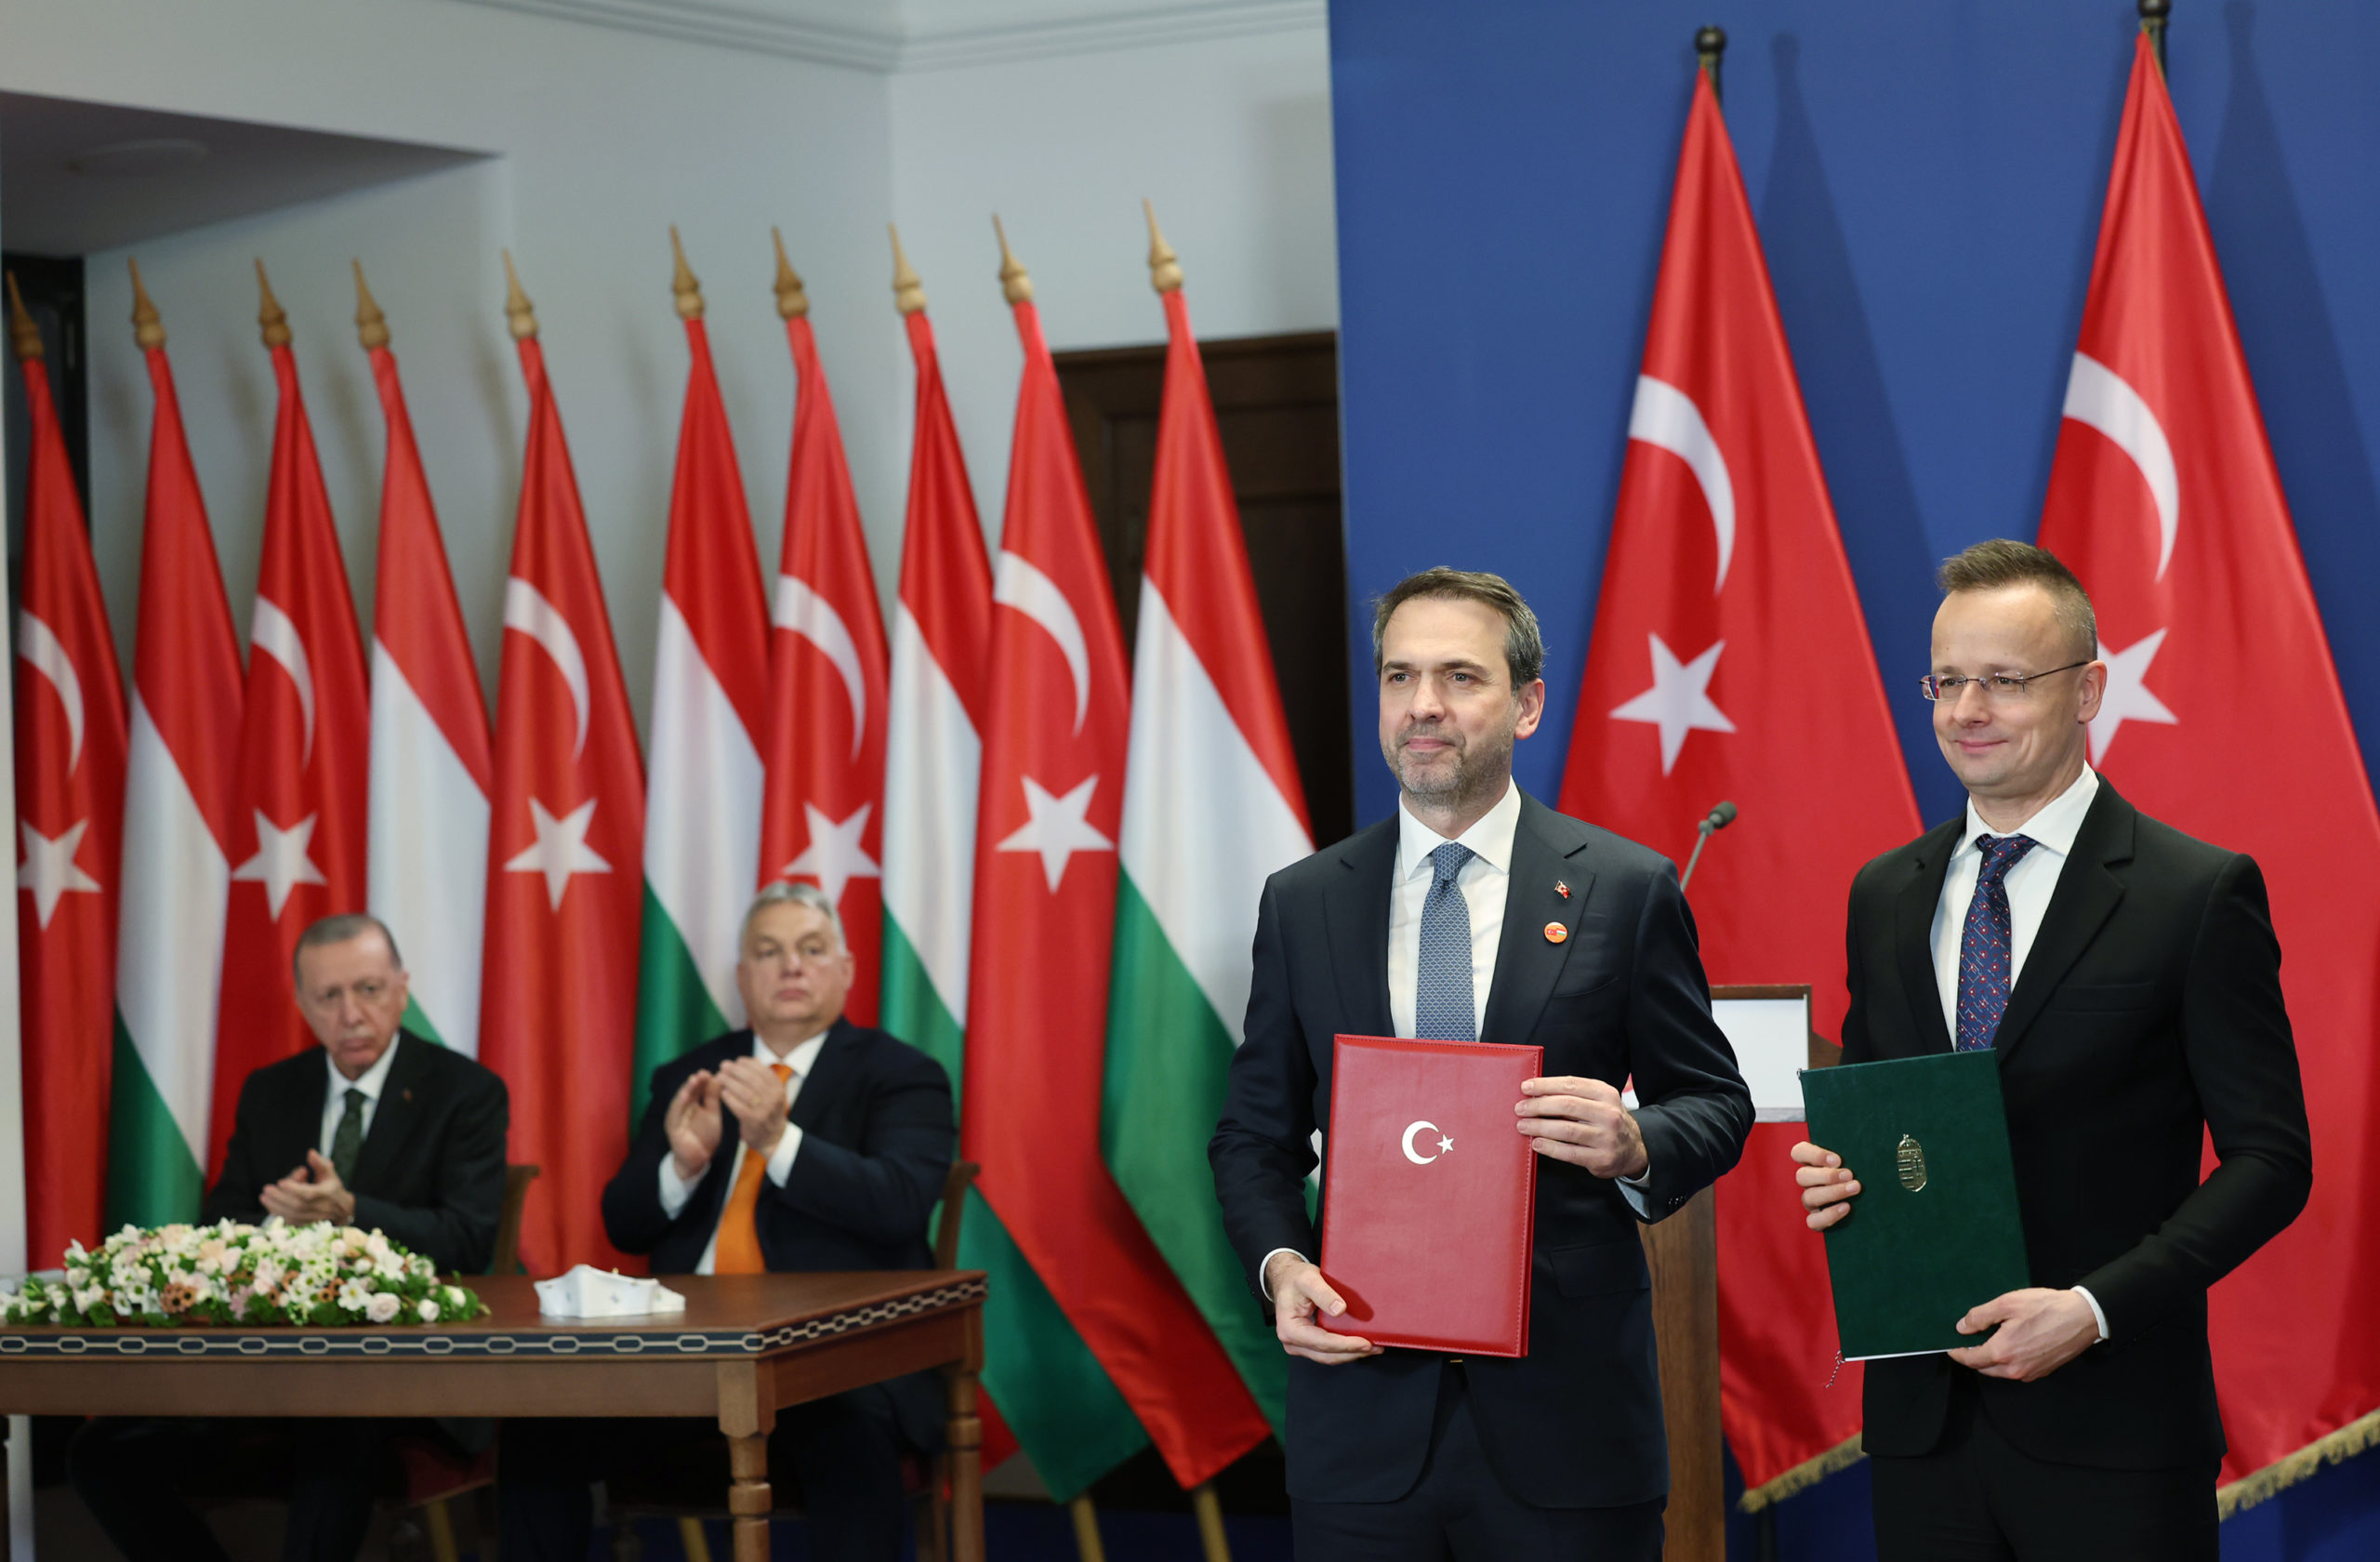 Macaristan ziyareti kapsamında enerji işbirliği imzaları atıldı